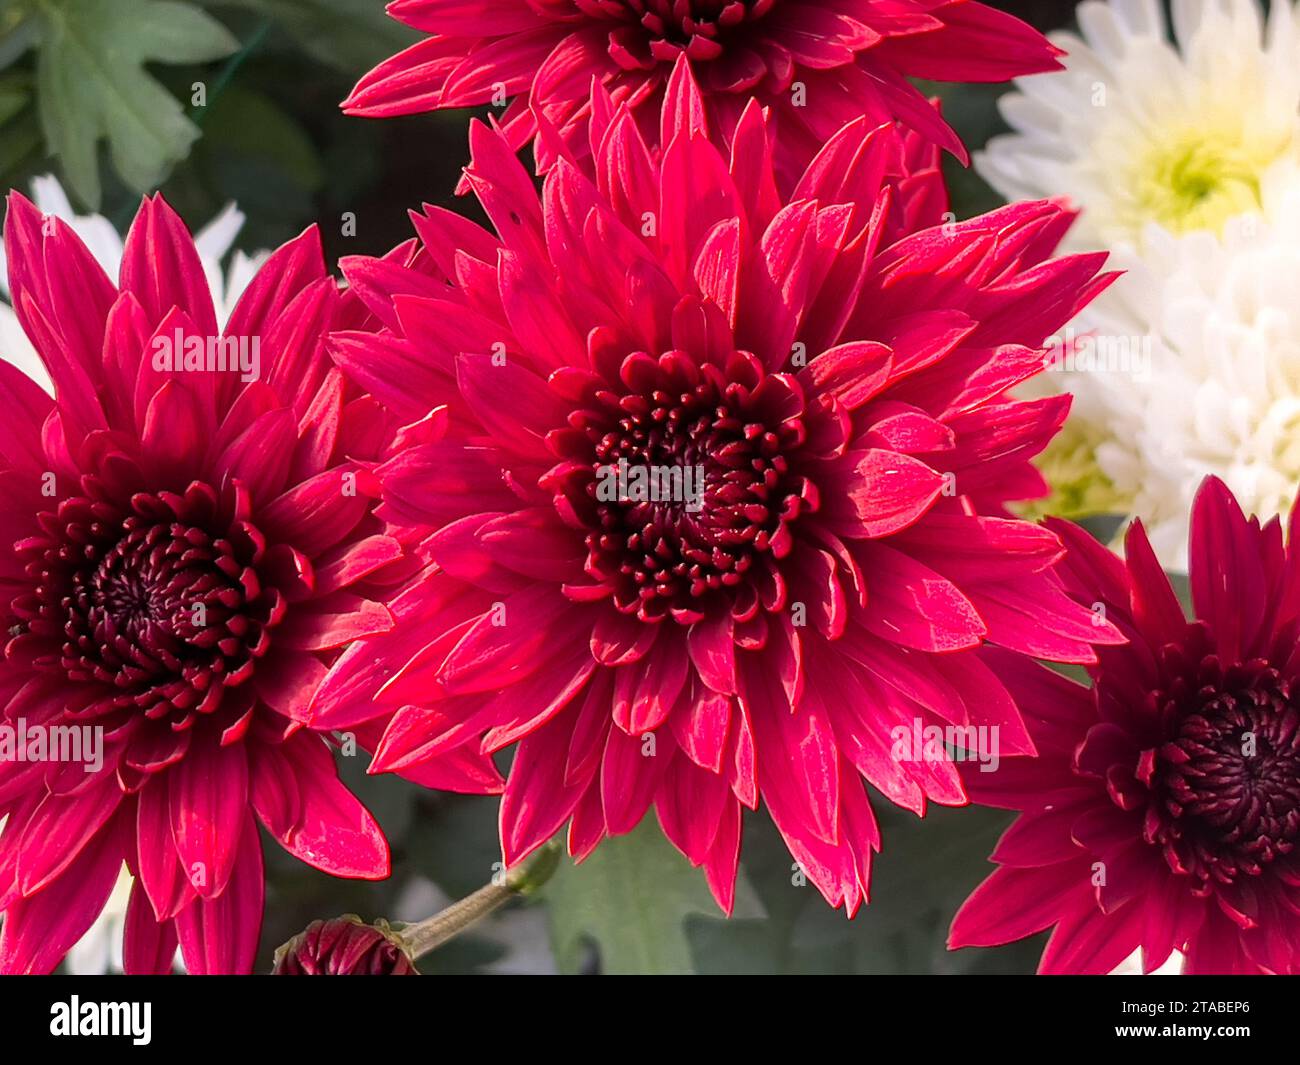 Vue de dessus de la fleur de chrysanthème rouge Banque D'Images